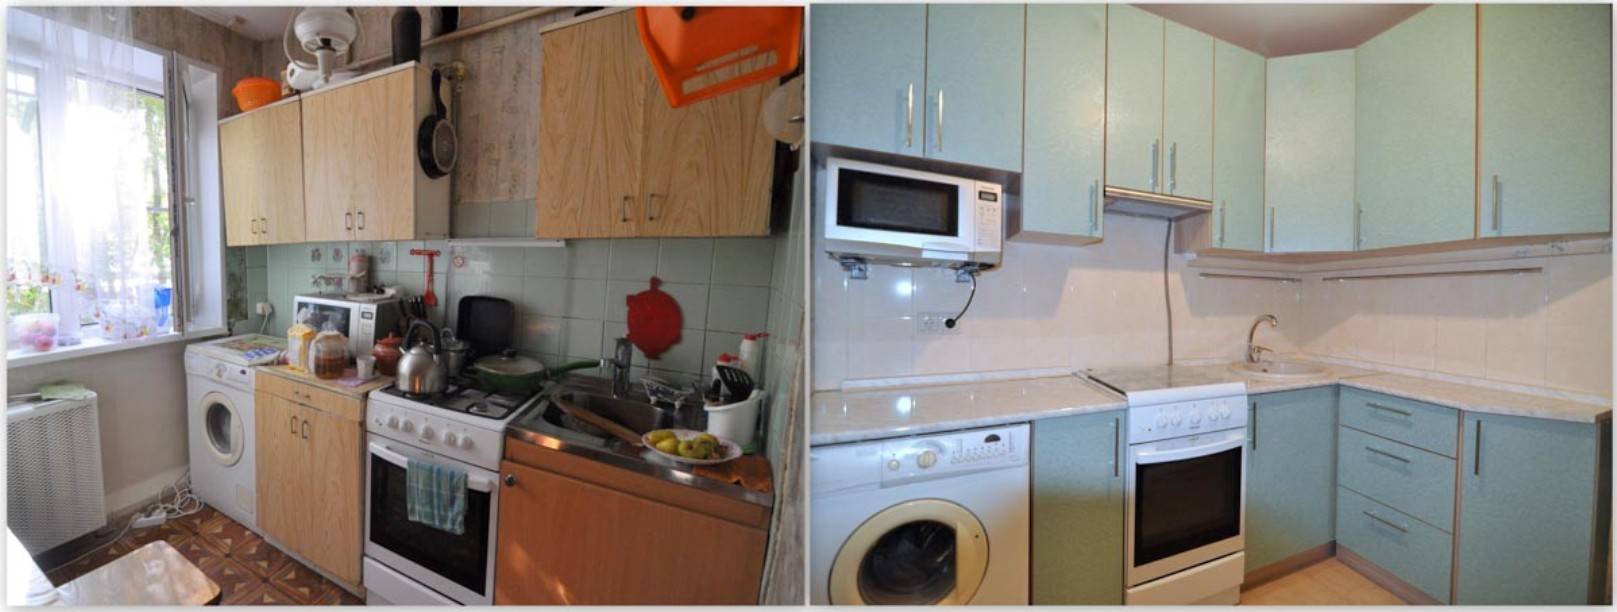 Кухня 6 кв.м. в хрущевке, фото до и после ремонта